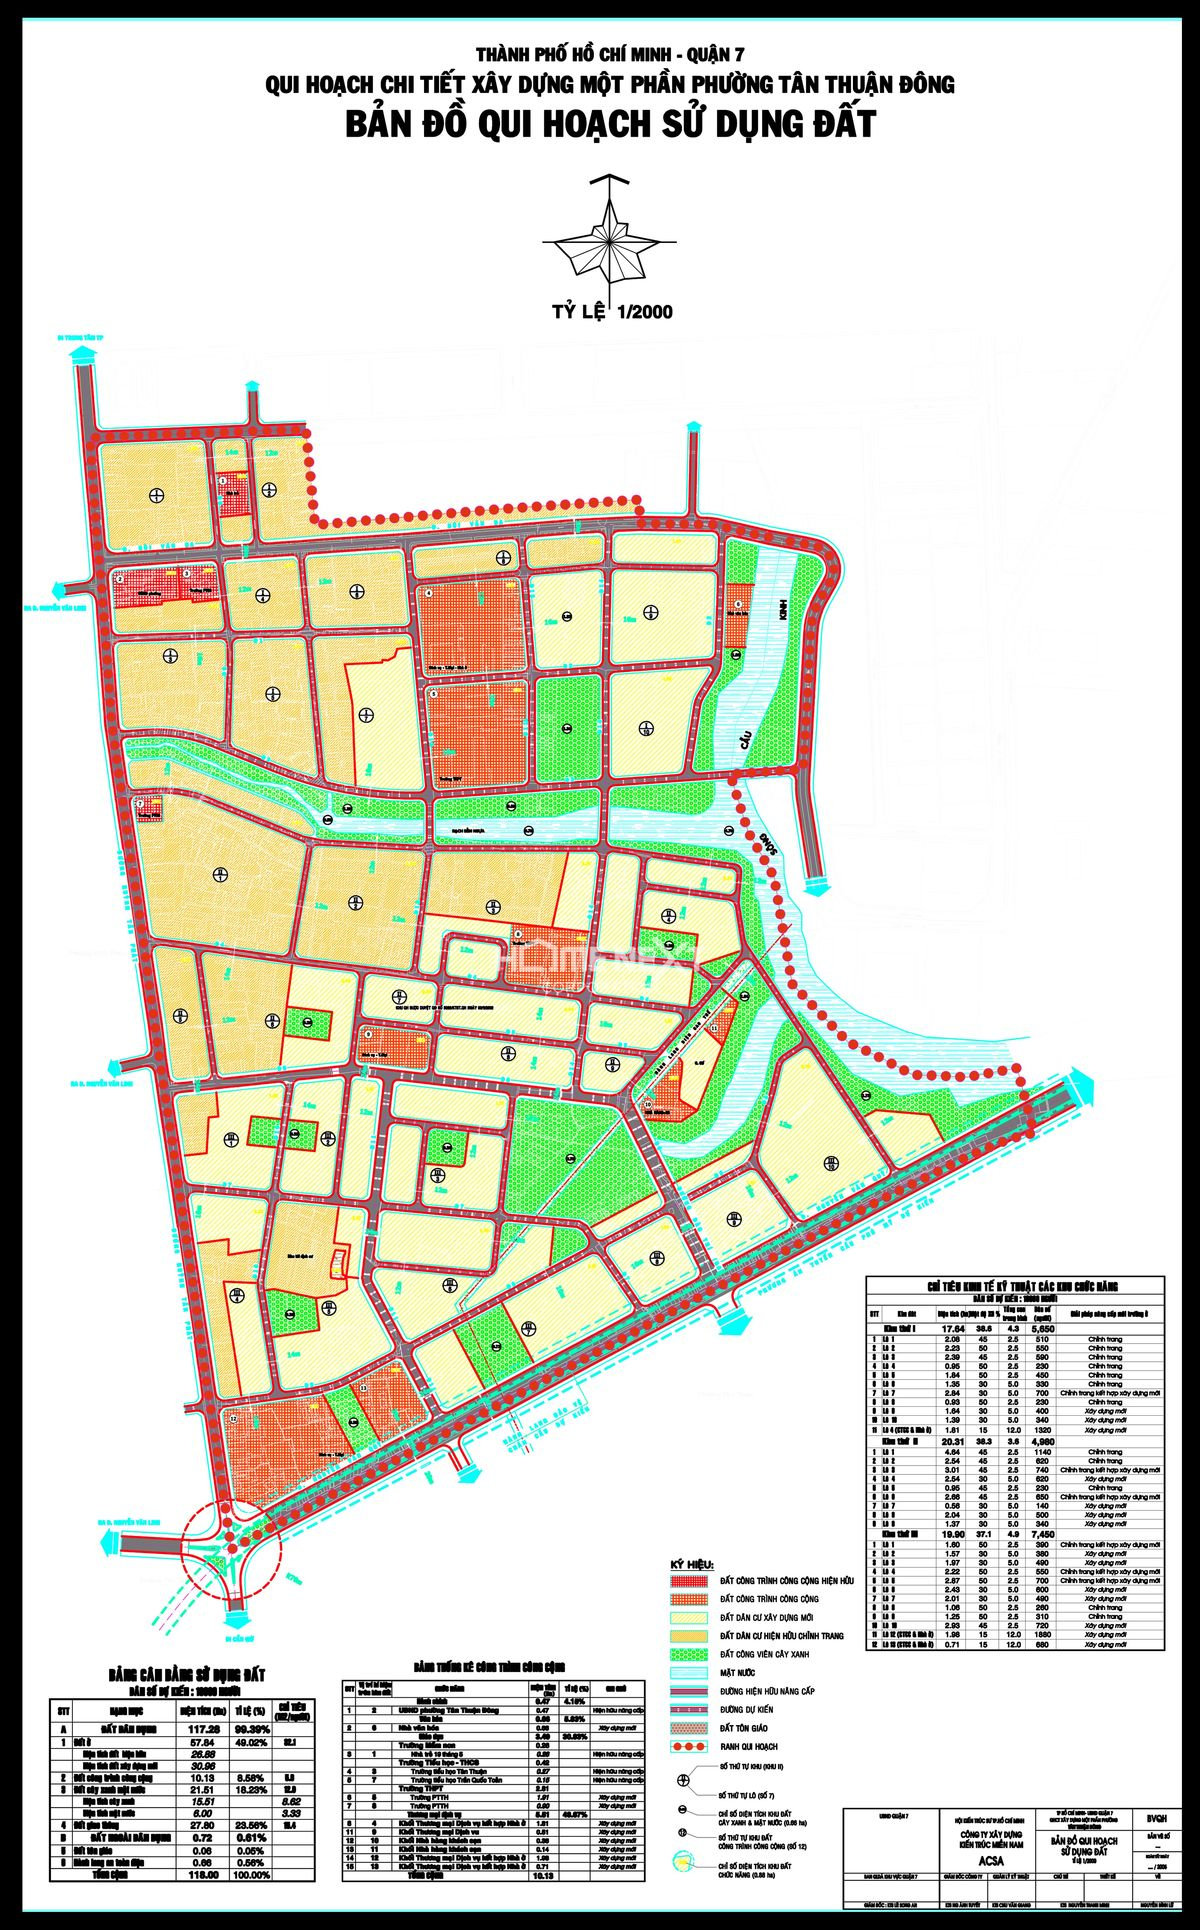 Bản đồ quy hoạch 1/2000 Nam phường Tân Thuận Đông Quận 7